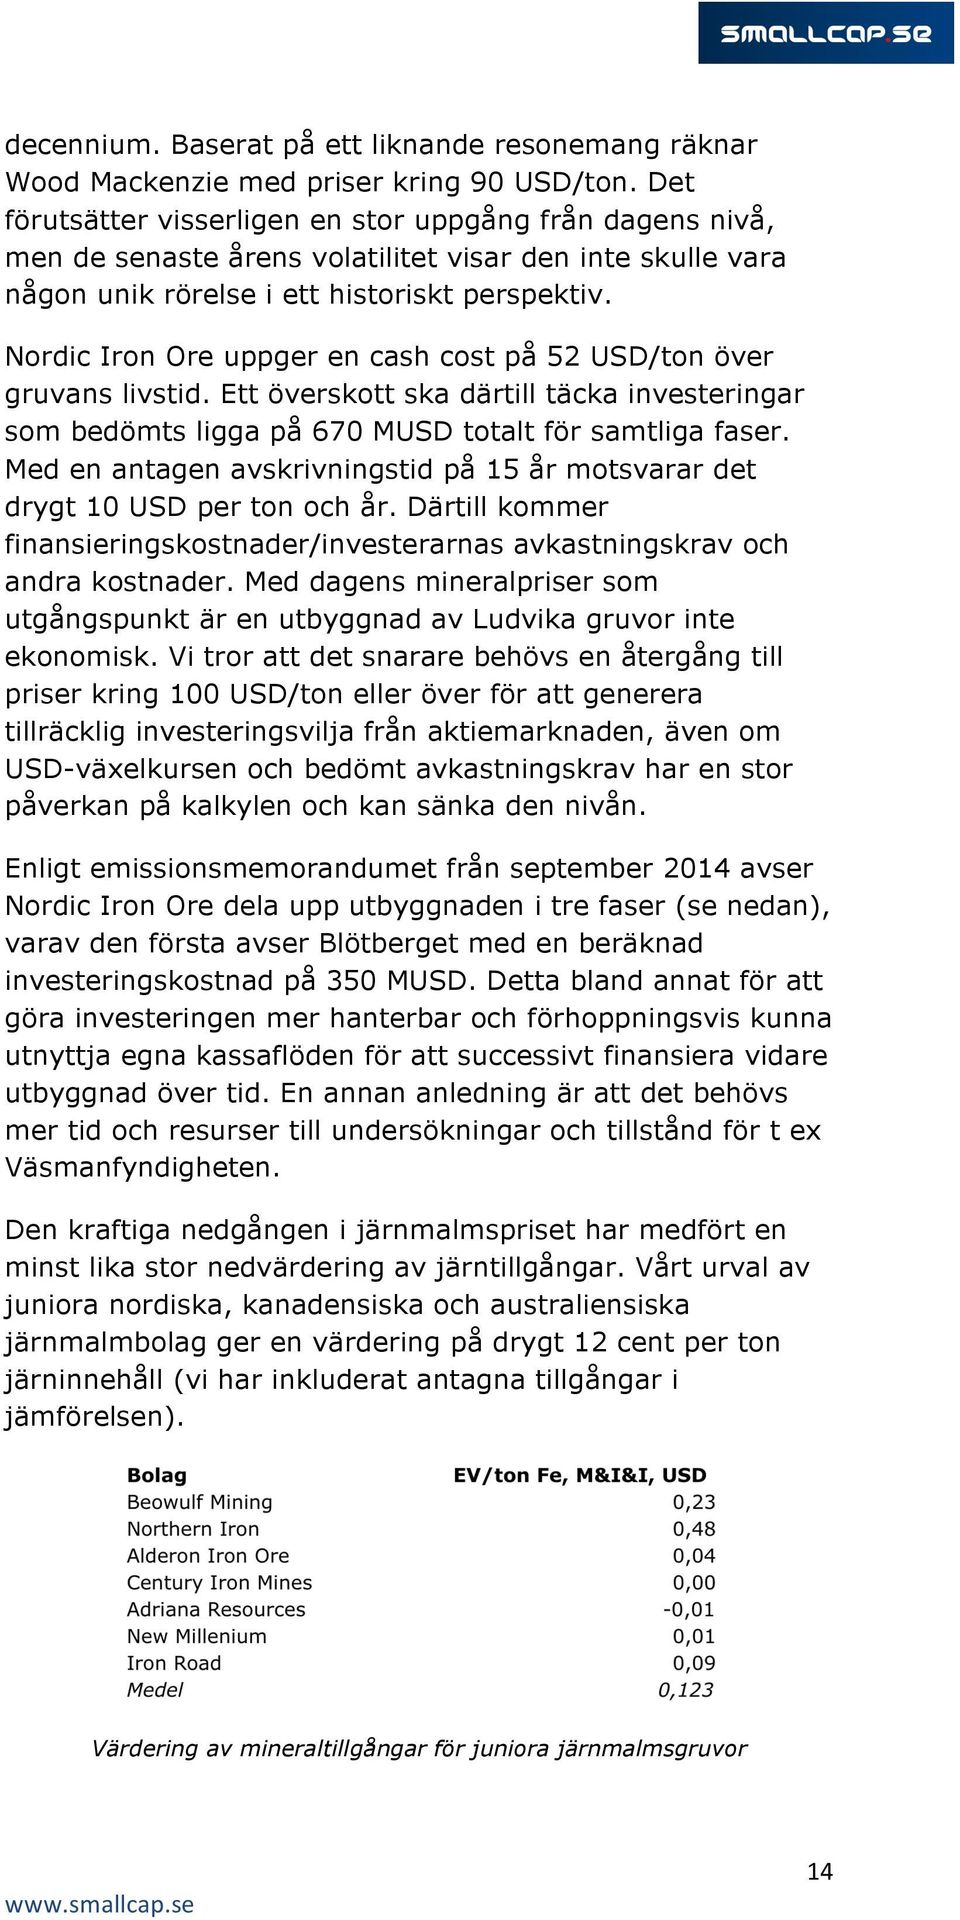 Nordic Iron Ore uppger en cash cost på 52 USD/ton över gruvans livstid. Ett överskott ska därtill täcka investeringar som bedömts ligga på 670 MUSD totalt för samtliga faser.